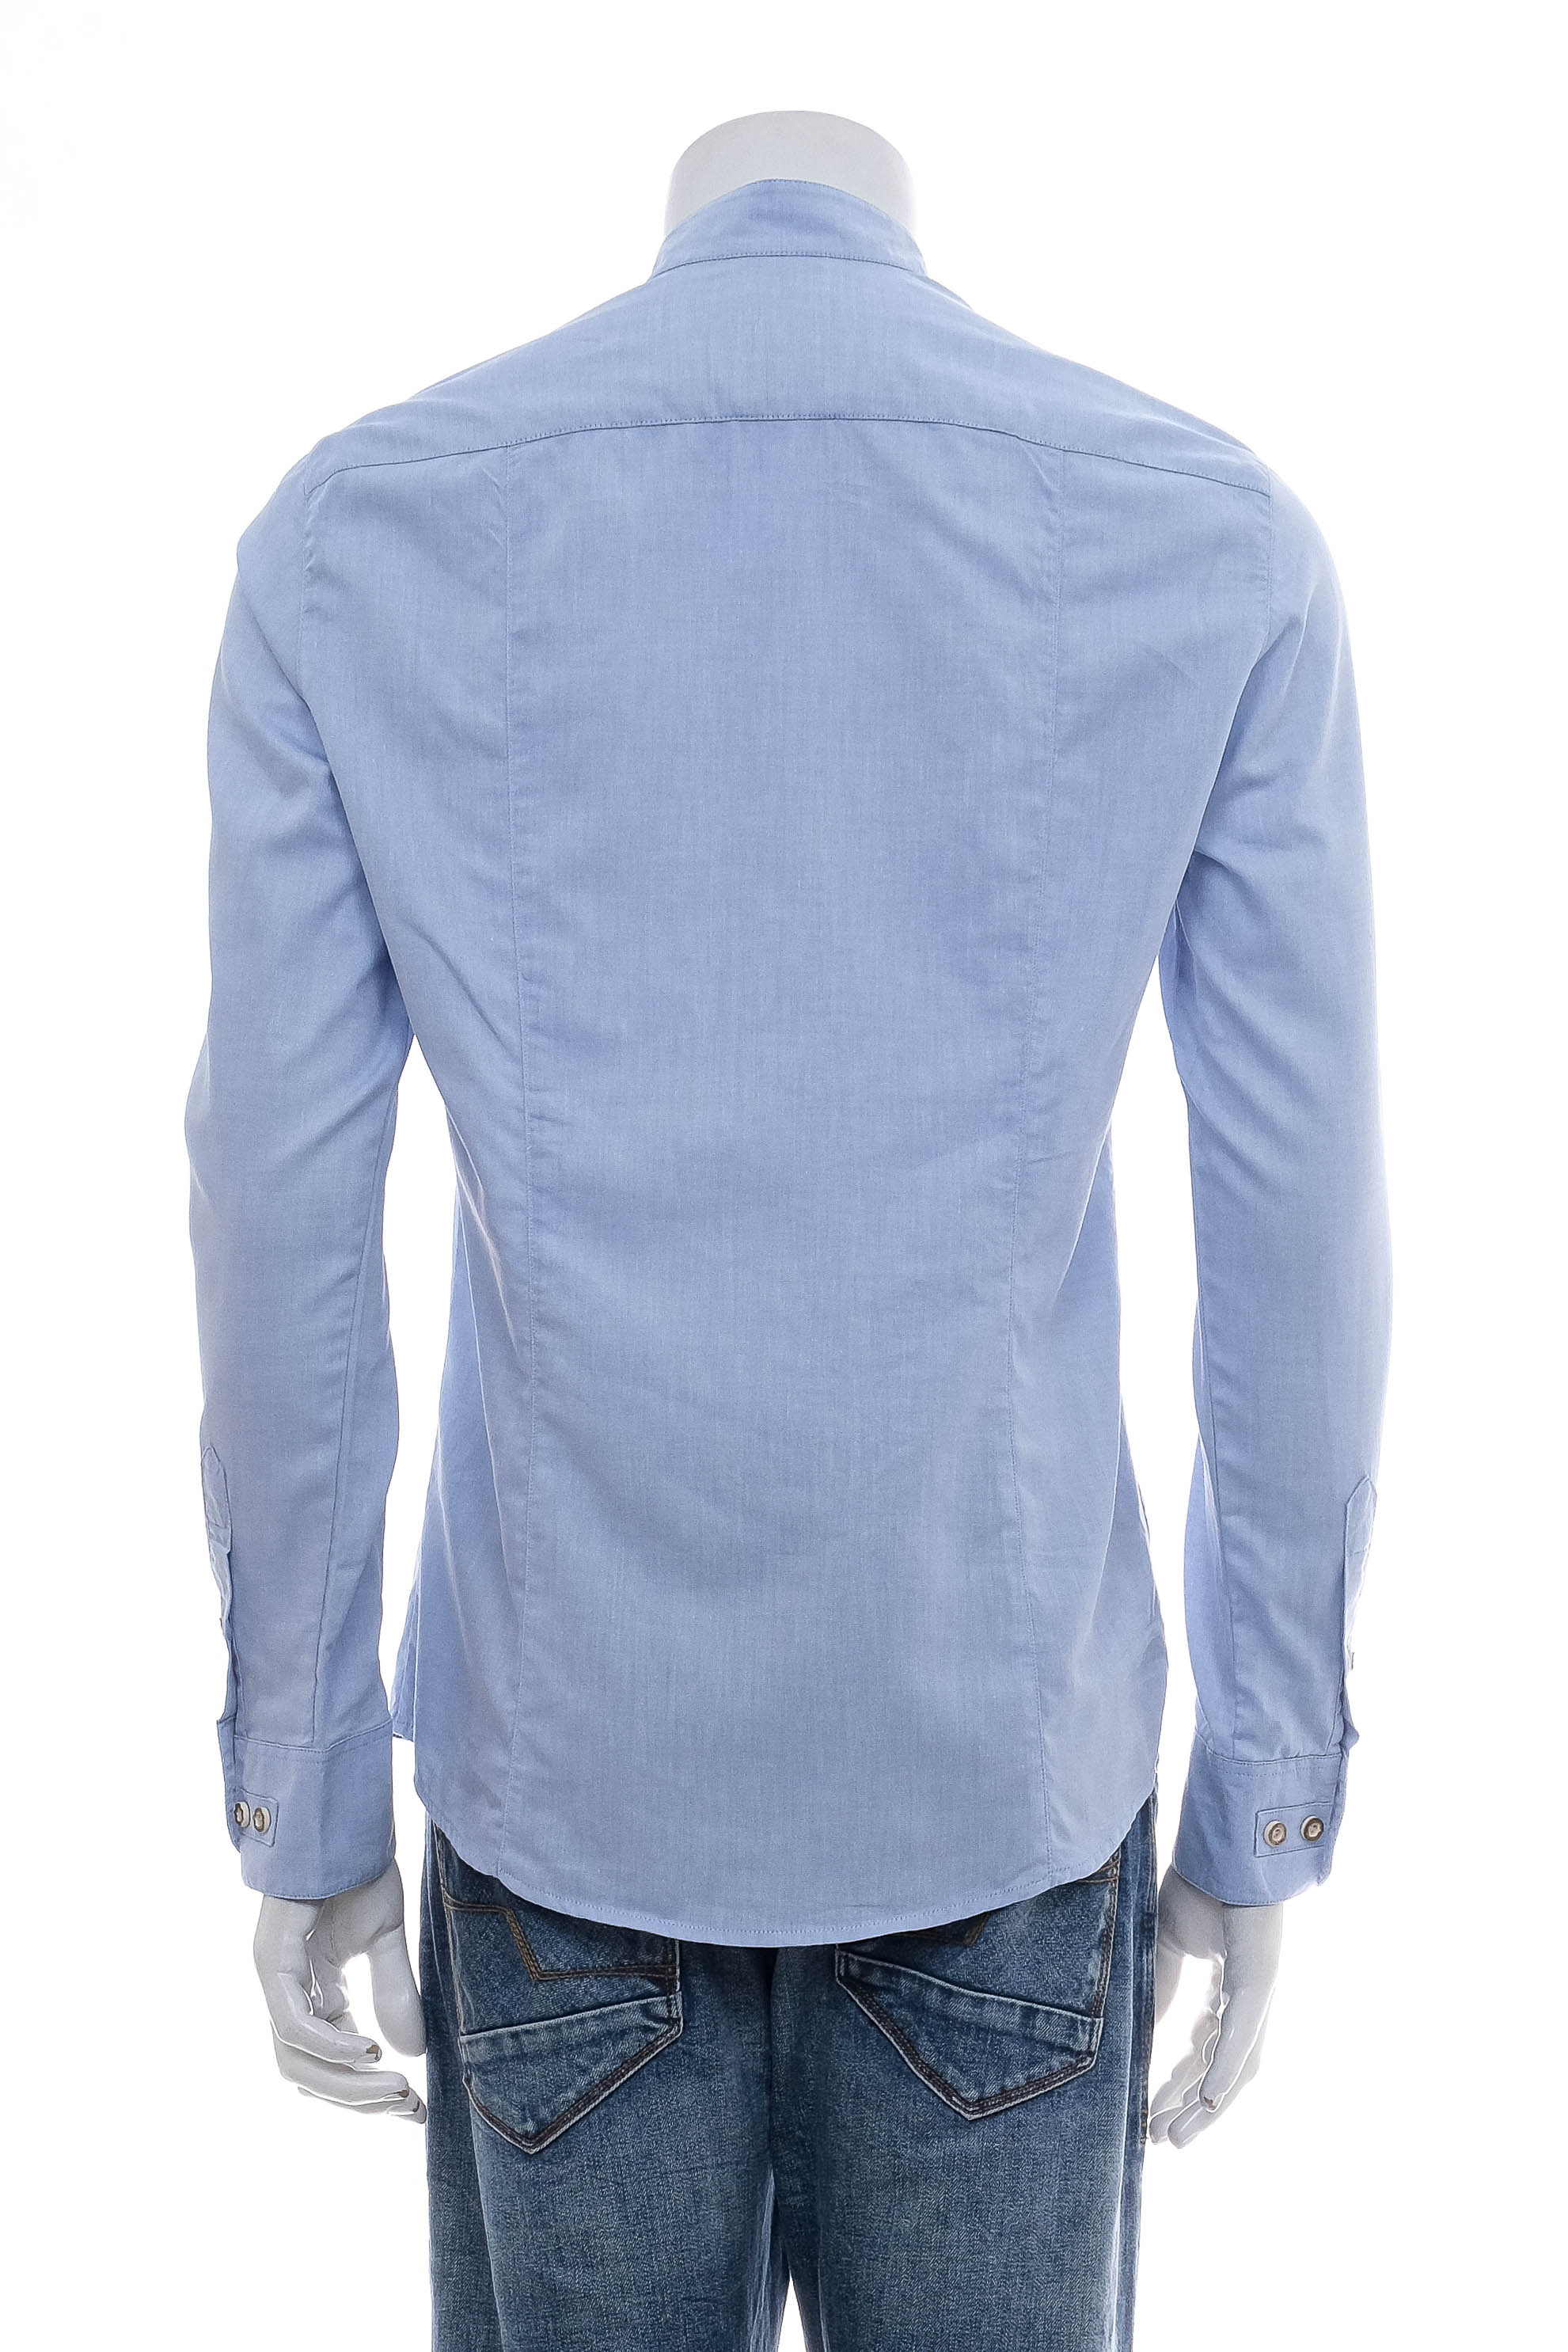 Ανδρικό πουκάμισο - CocoVero - 1